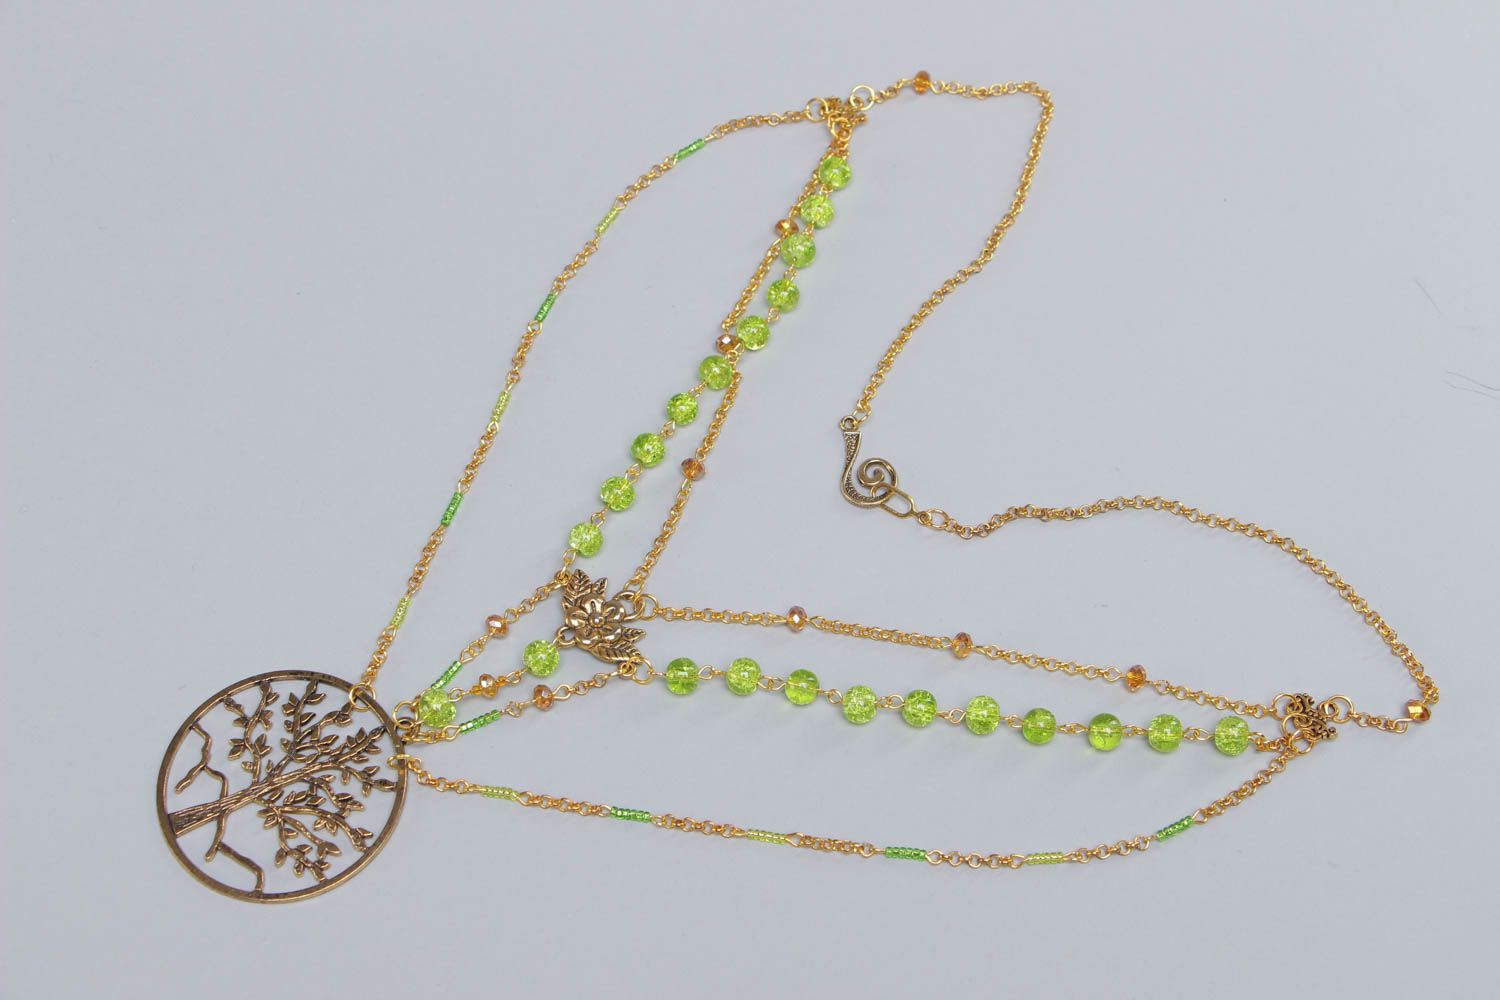 Long collier en perles de verre vertes et chaînette fait main Arbre de vie photo 2